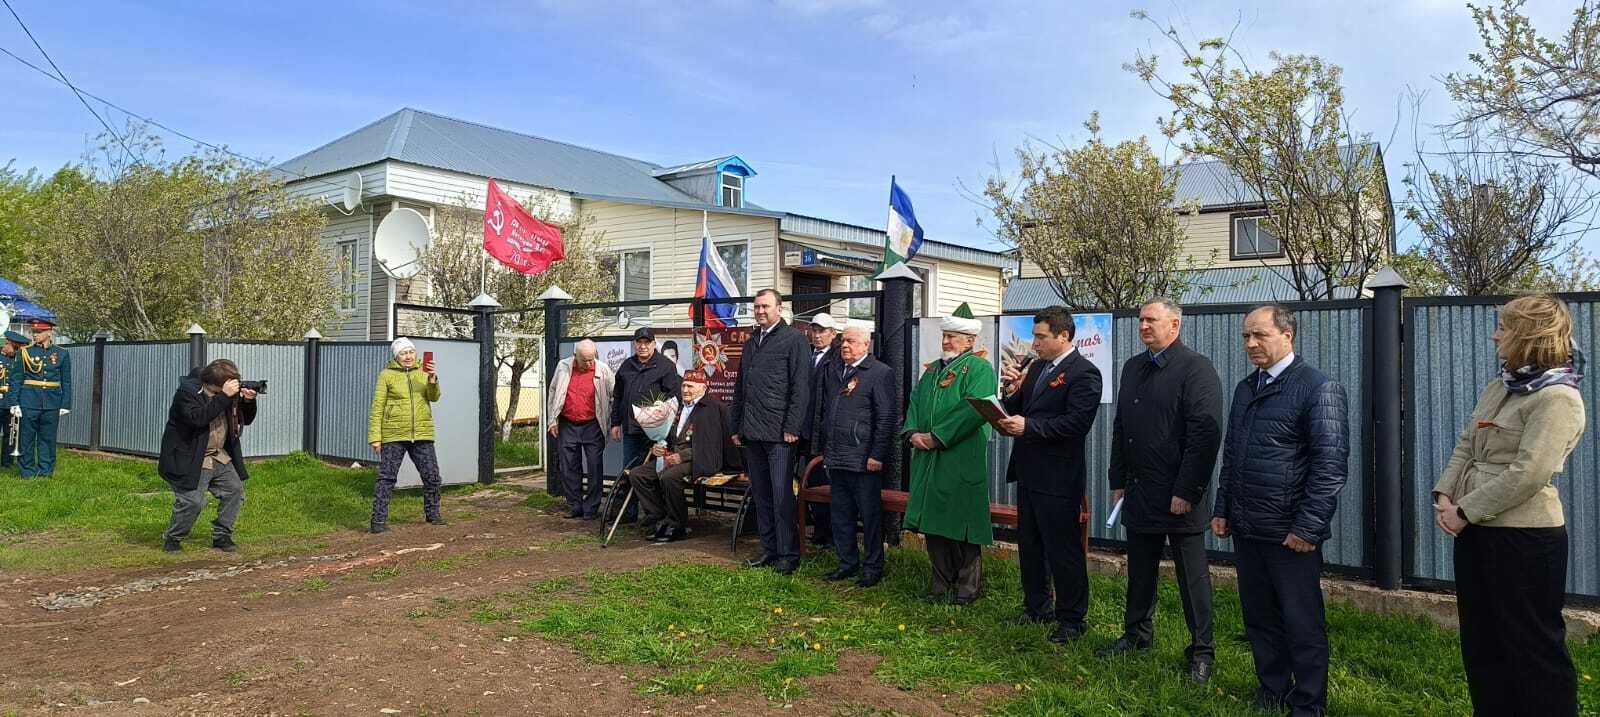 Сегодня парадом чествовали единственного ветерана ВОВ Чишминского района